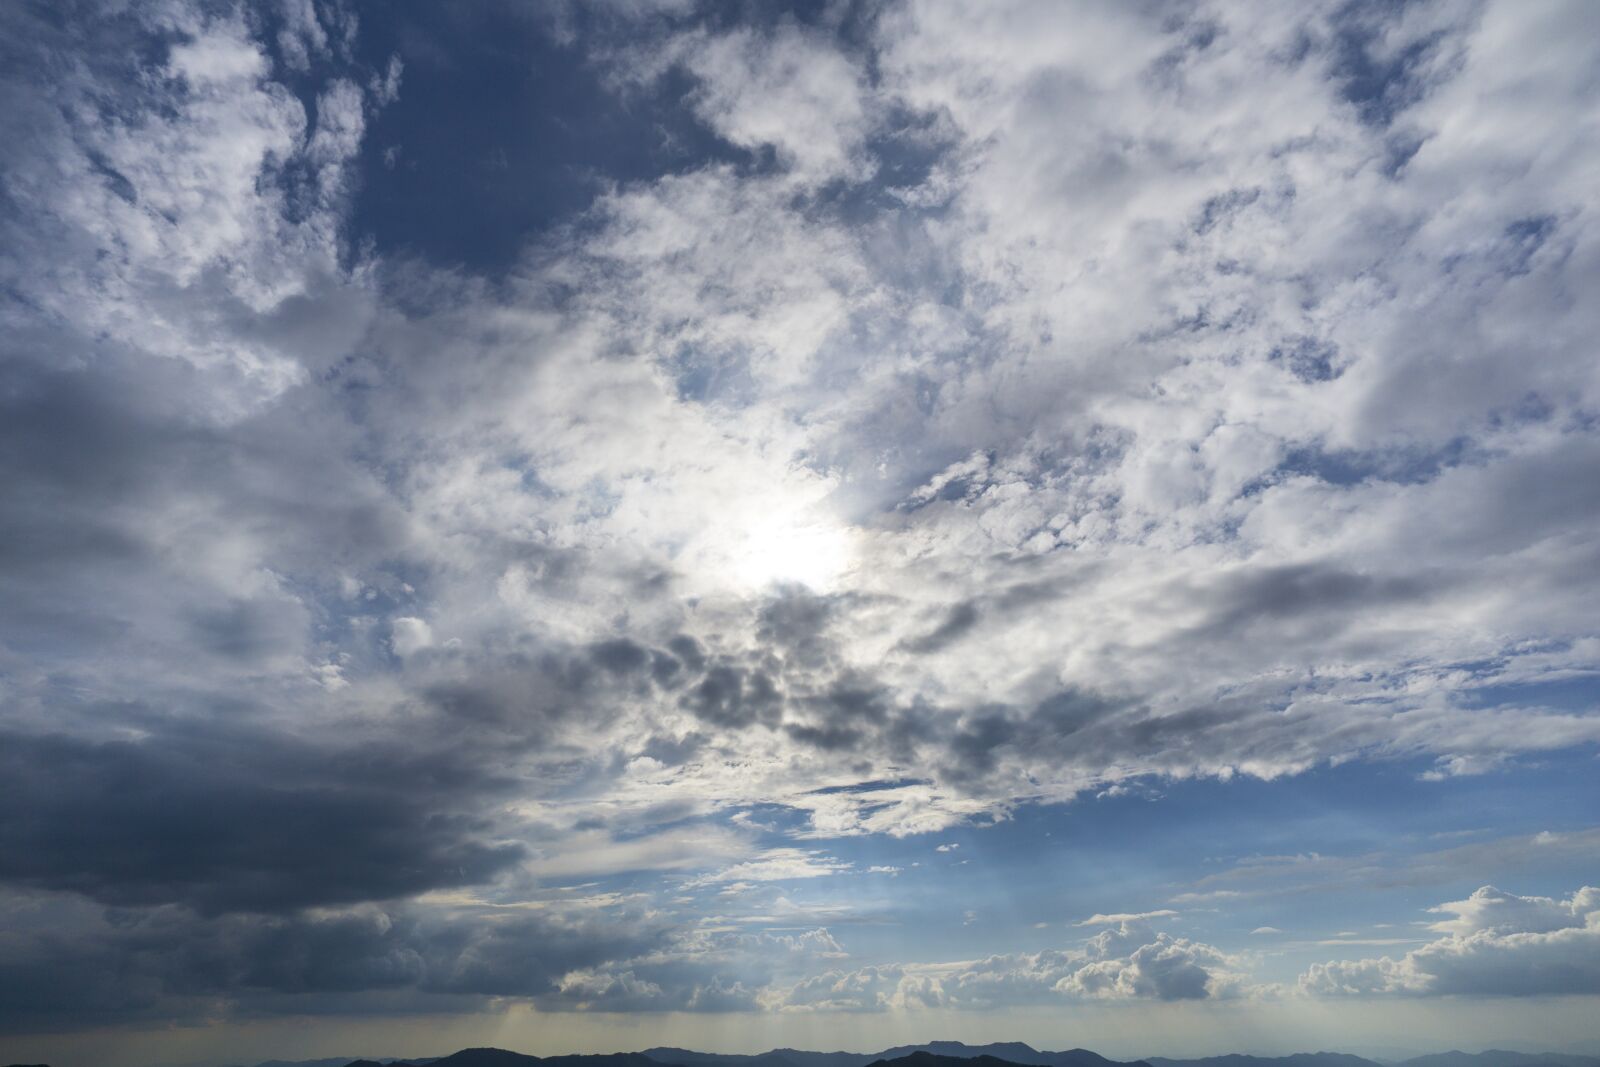 ZEISS Touit 12mm F2.8 sample photo. Sky, landscape, cloud photography